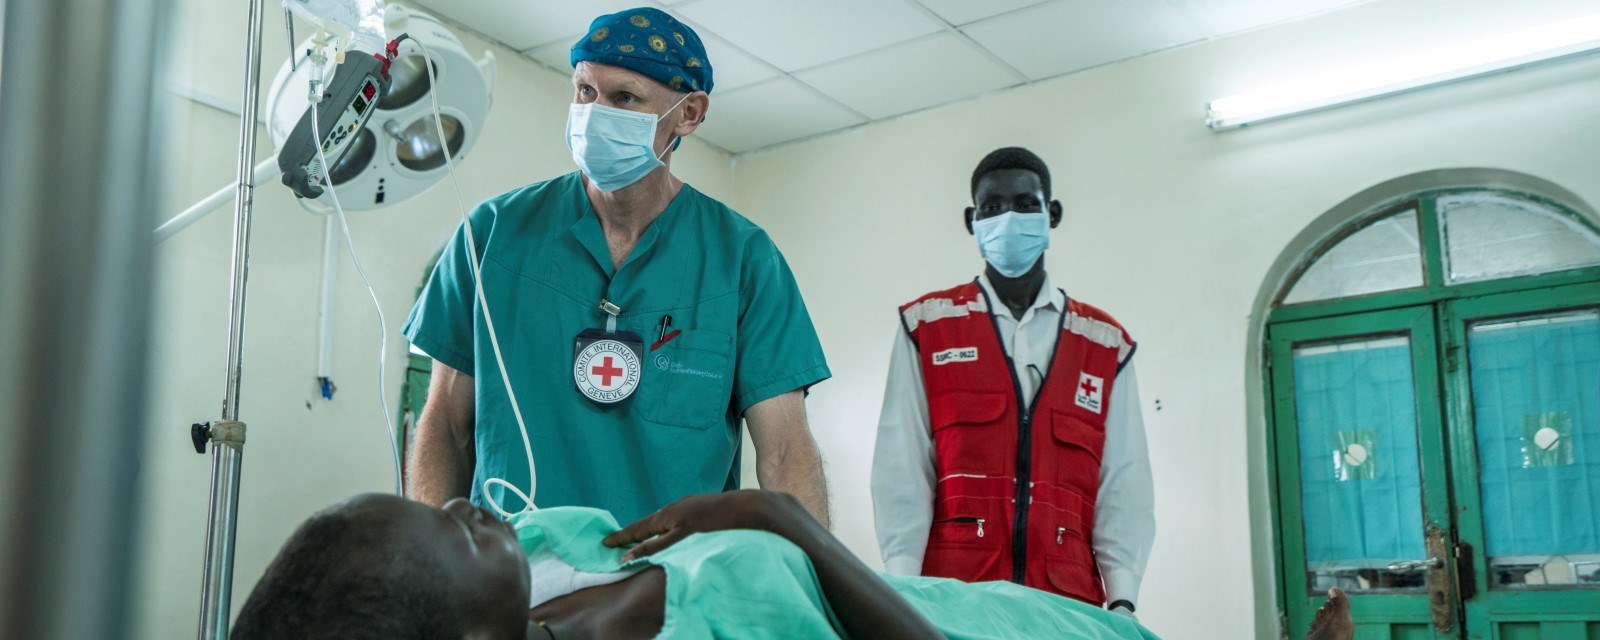 En norsk lege ikledd turkise operasjonsklær står sammen med en lokal sørsudansk frivillig i rød vest, over et operasjonsbord med en pasient liggende klar for behandling